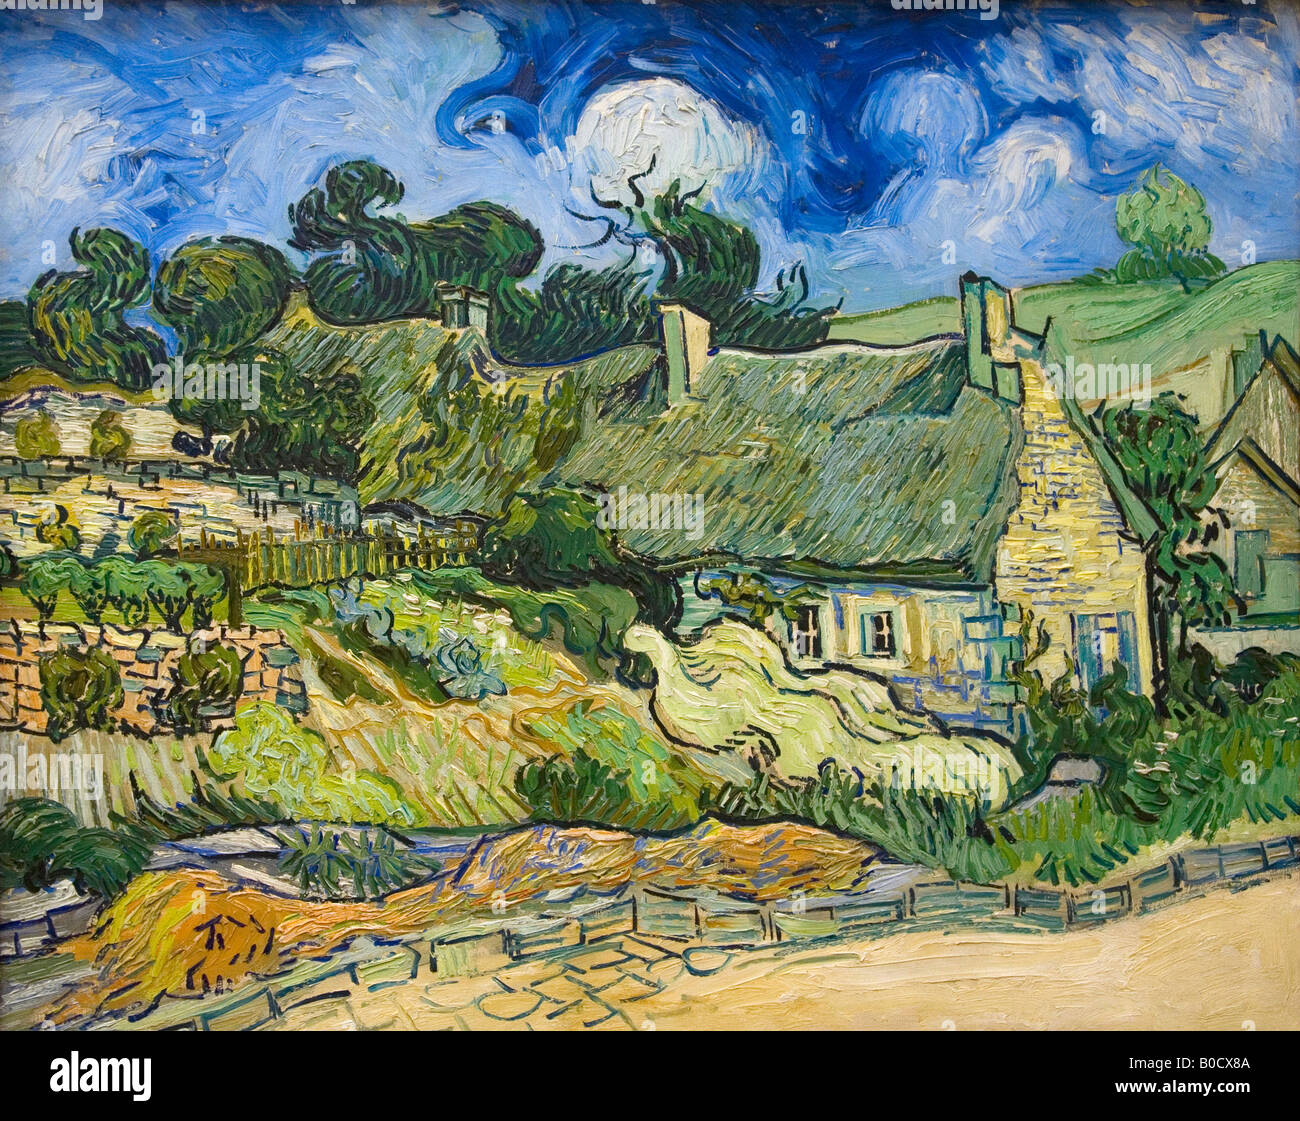 Thatched Cottages at Cordeville, Auvers-sur-Oise, Vincent van Gogh, 1890, Musee D'Orsay Paris France Stock Photo